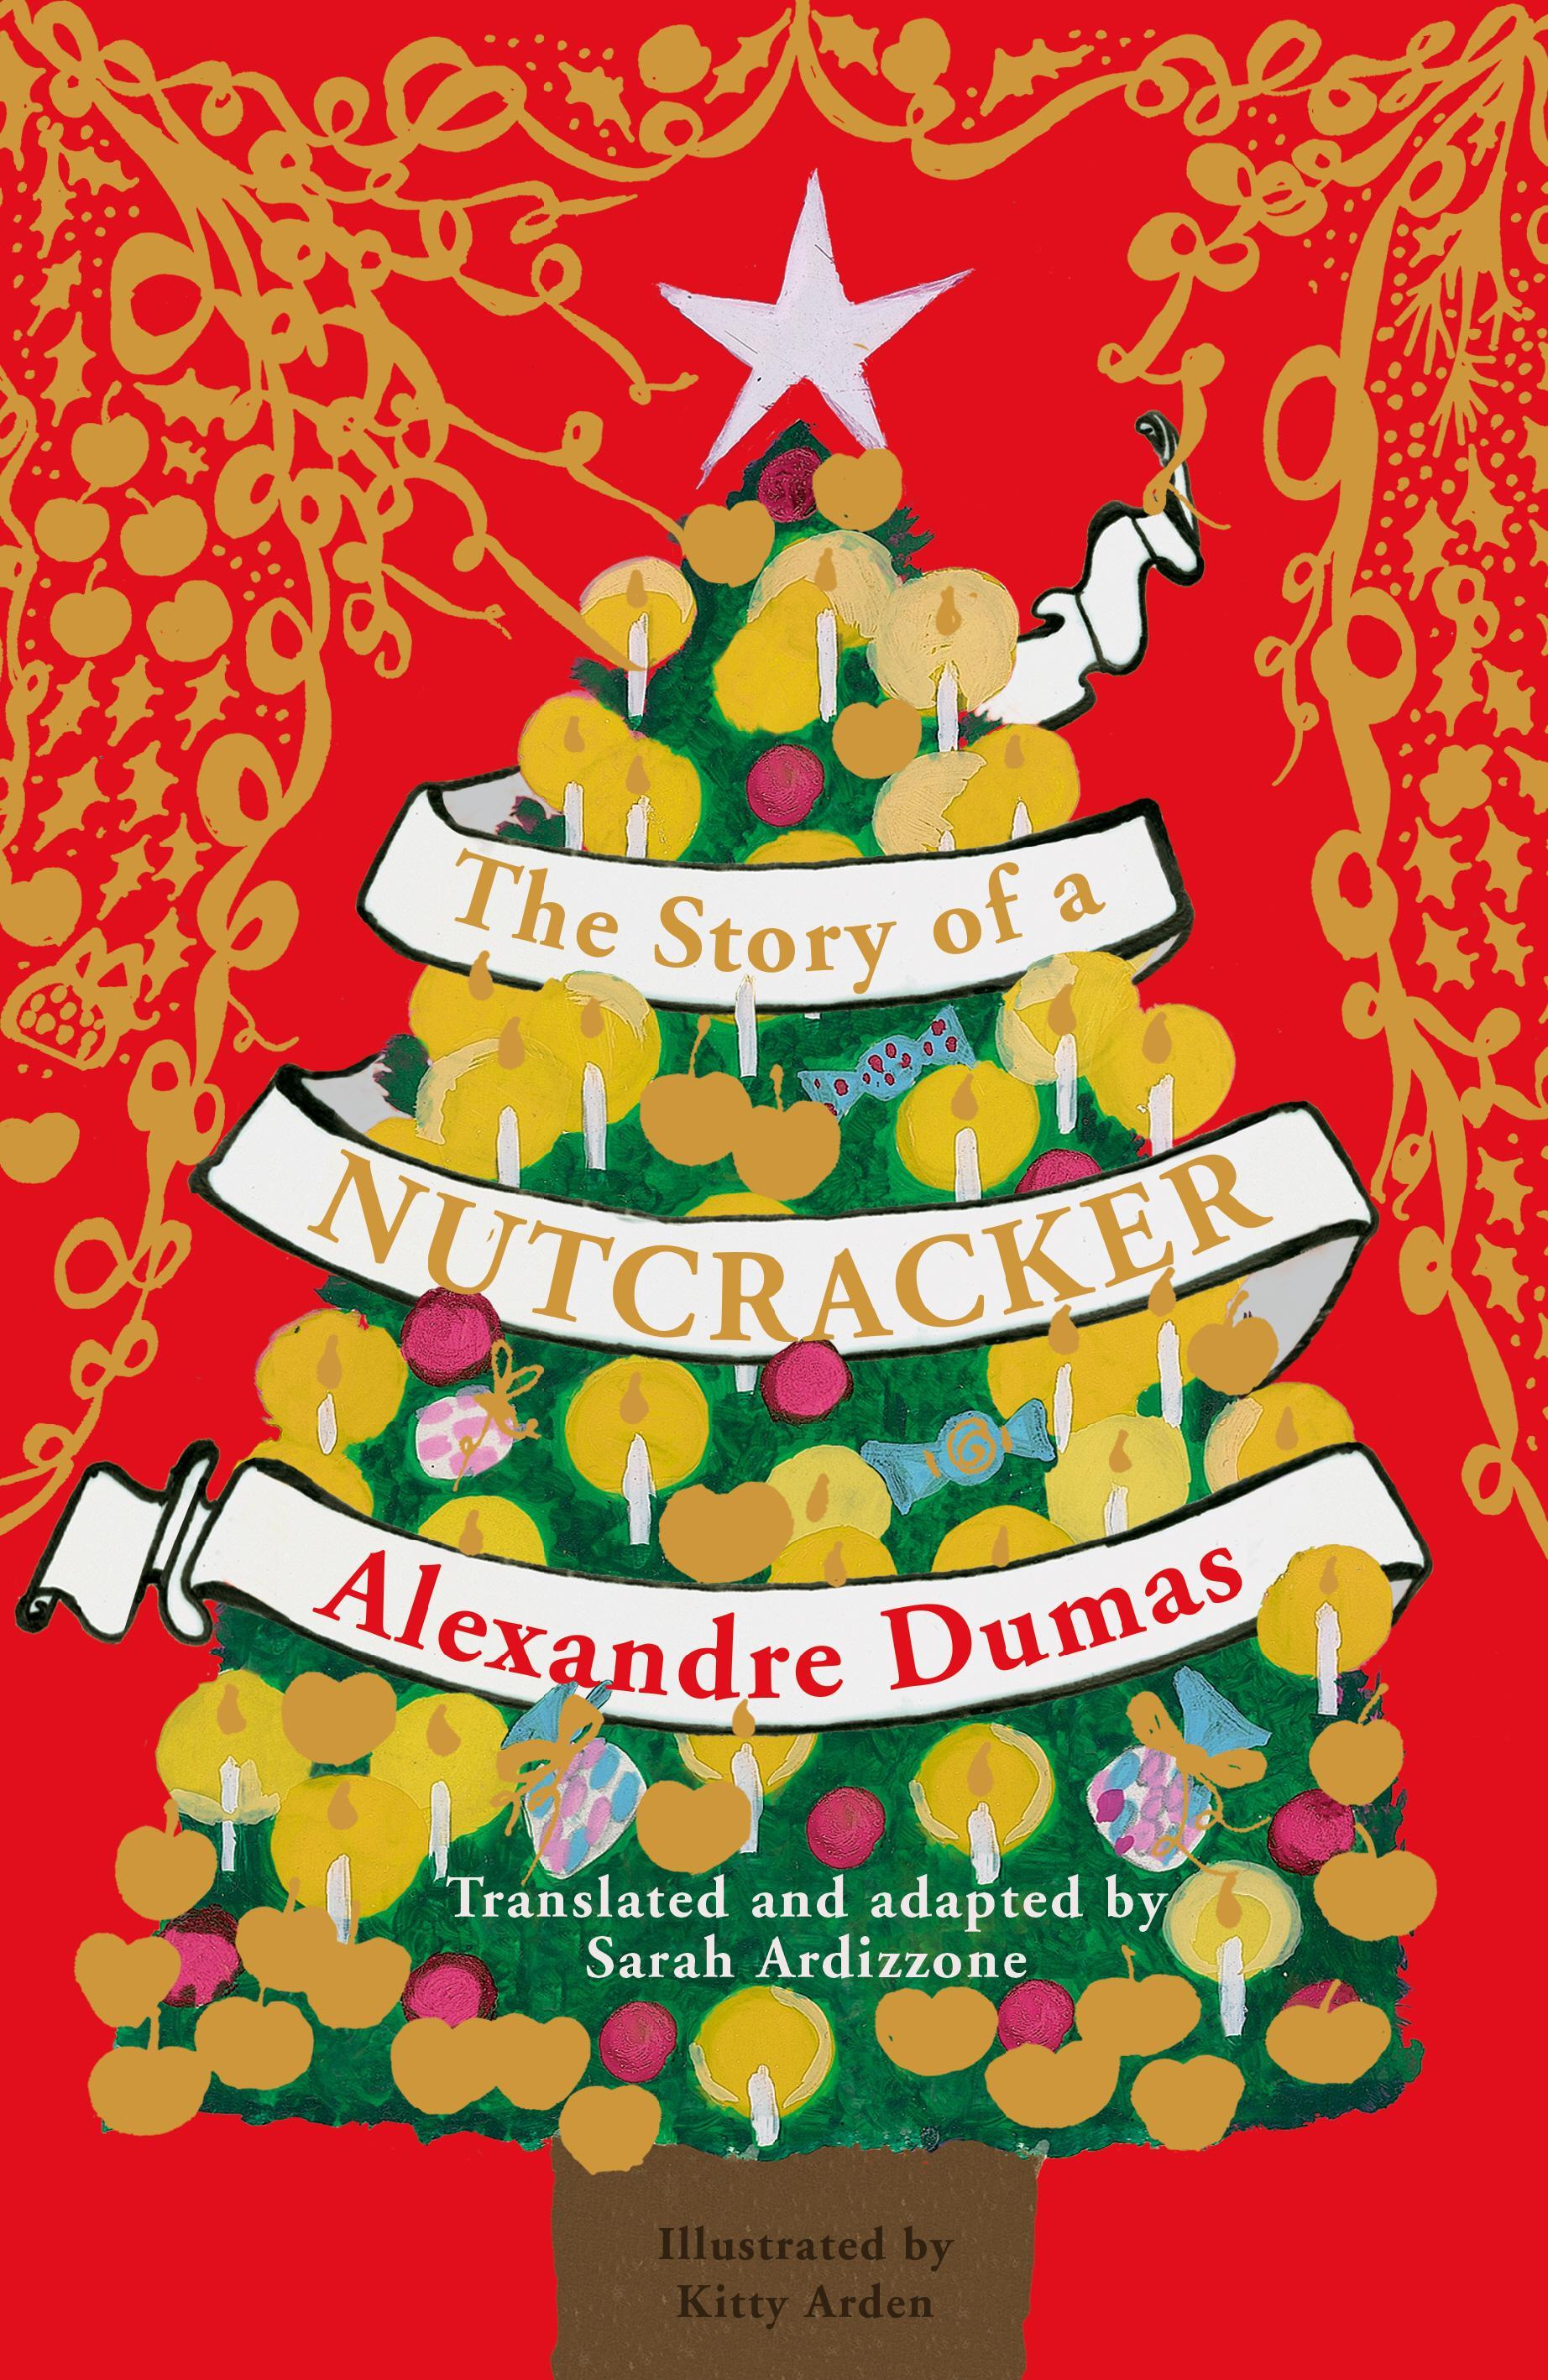 Story of a Nutcracker - Alexandre Dumas